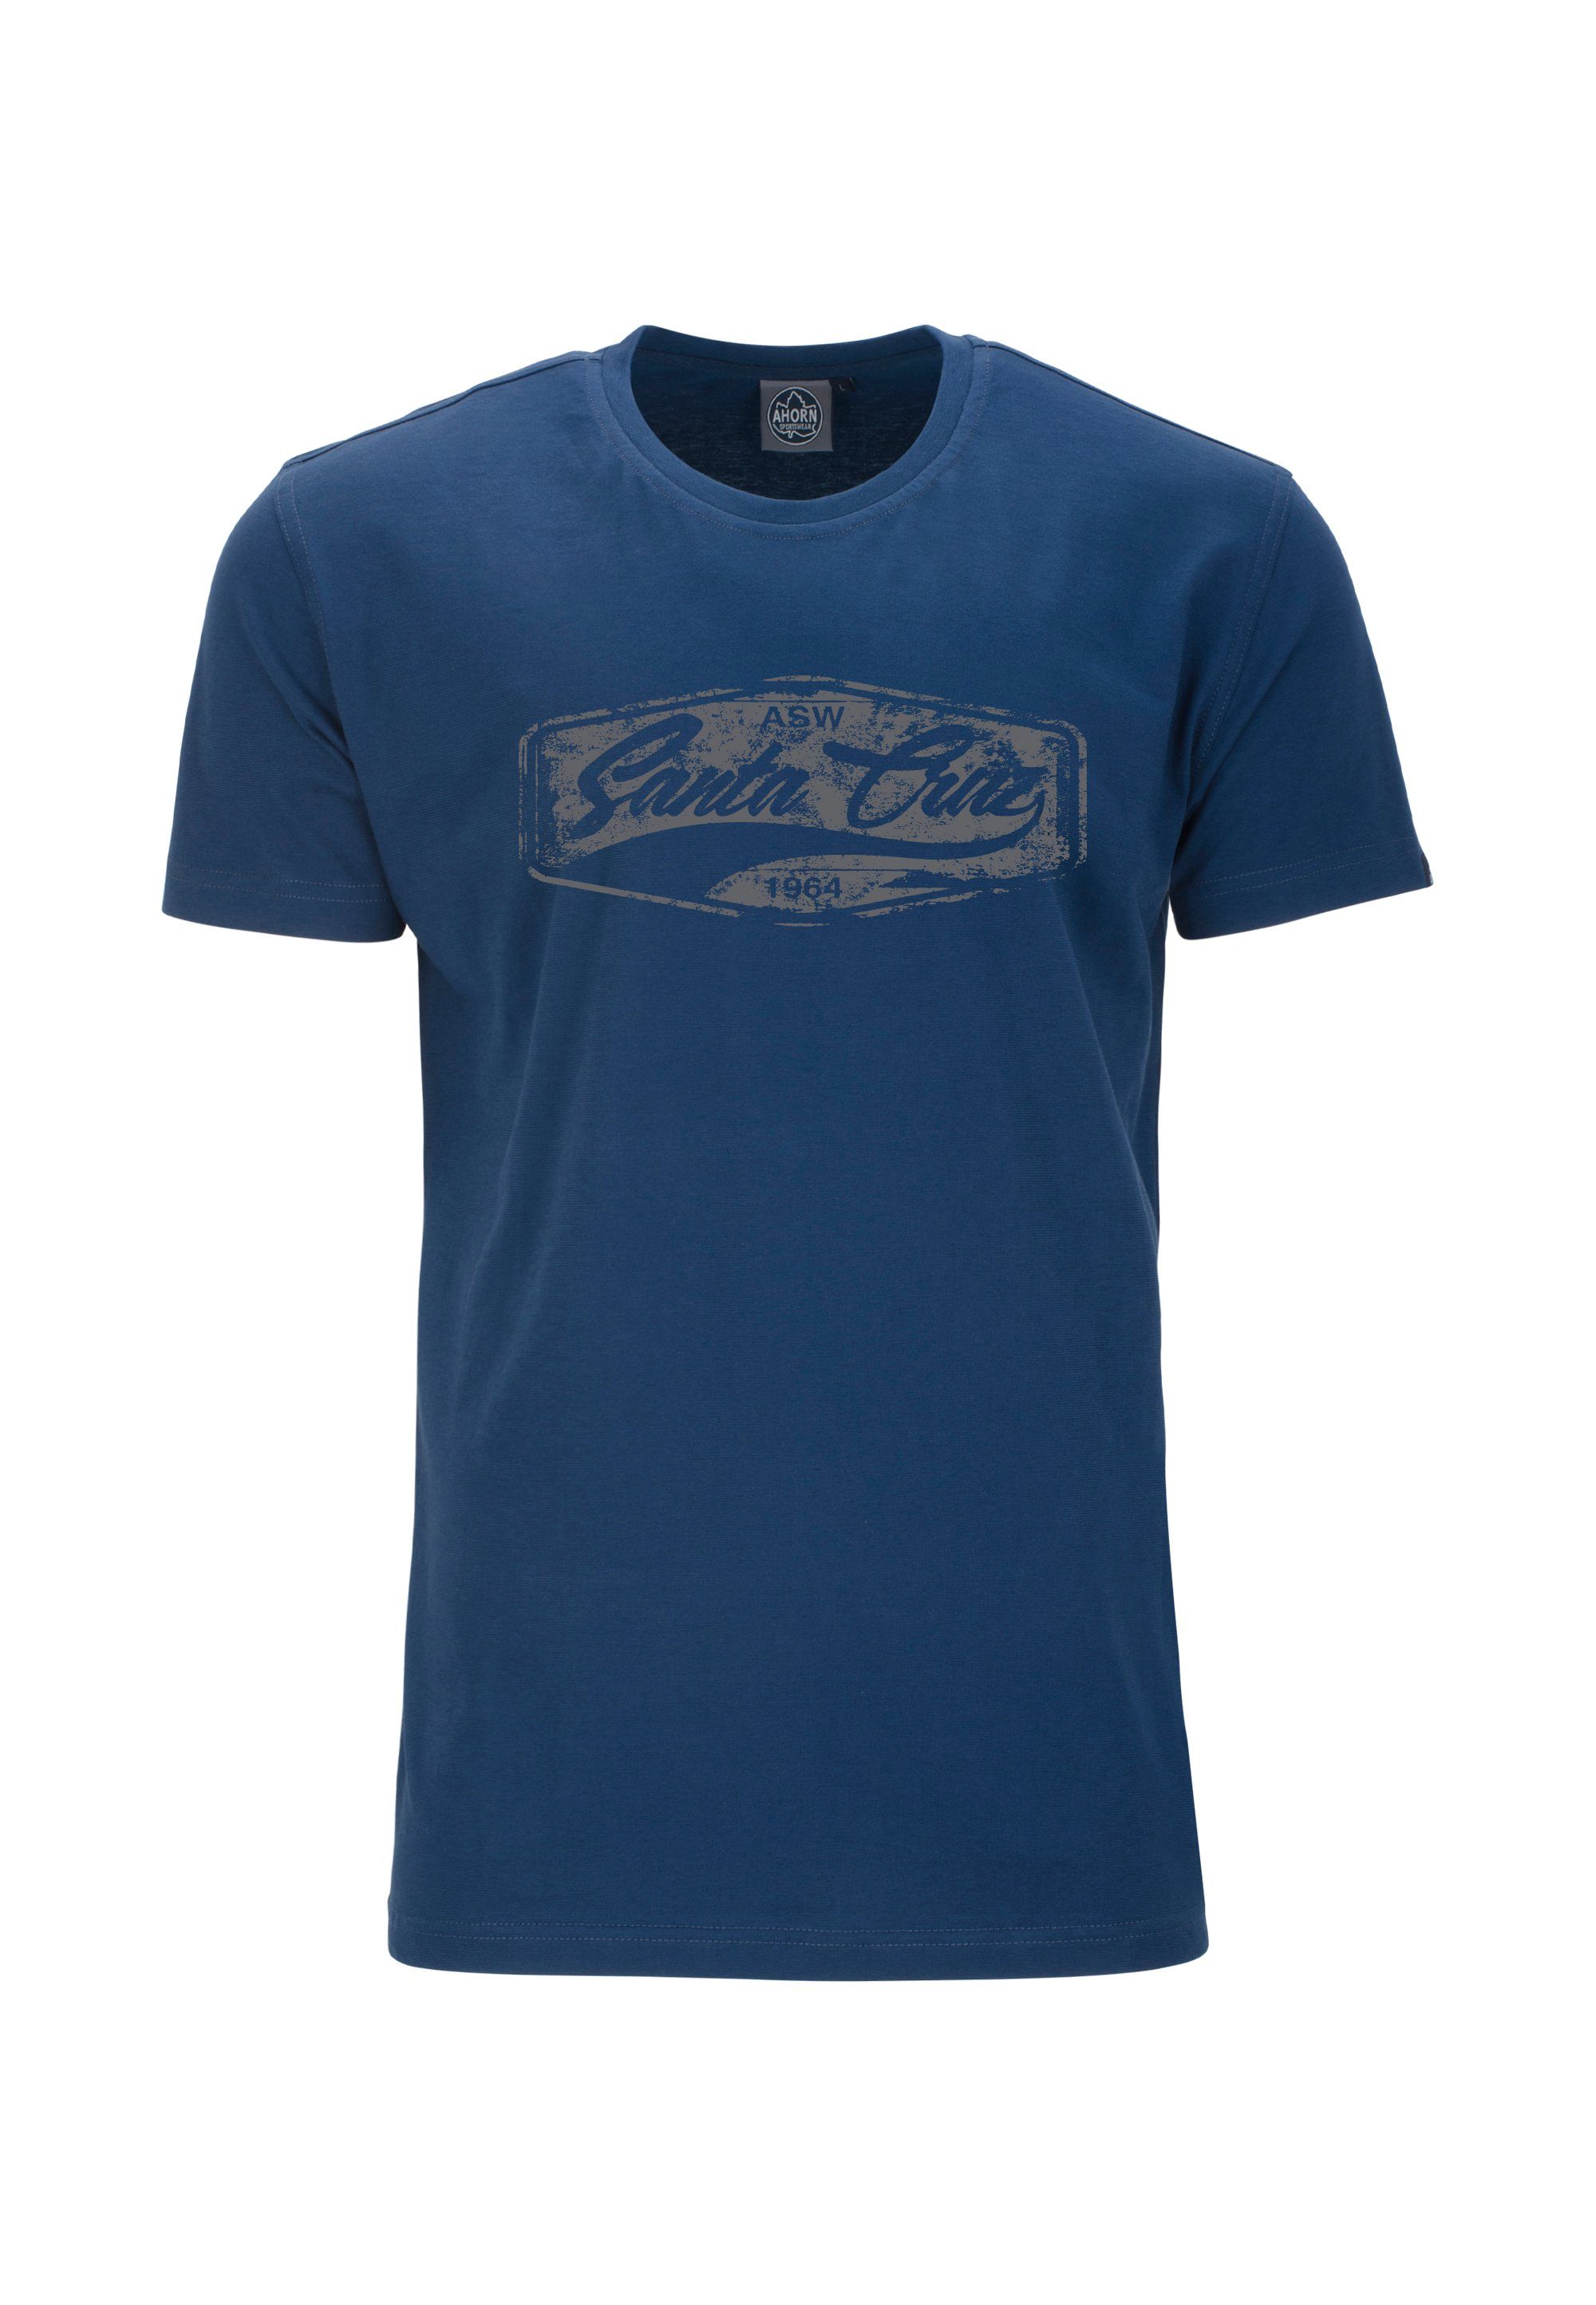 AHORN SPORTSWEAR T-Shirt SANTA CRUZ_POPPY SEED im klassischen Schnitt blau